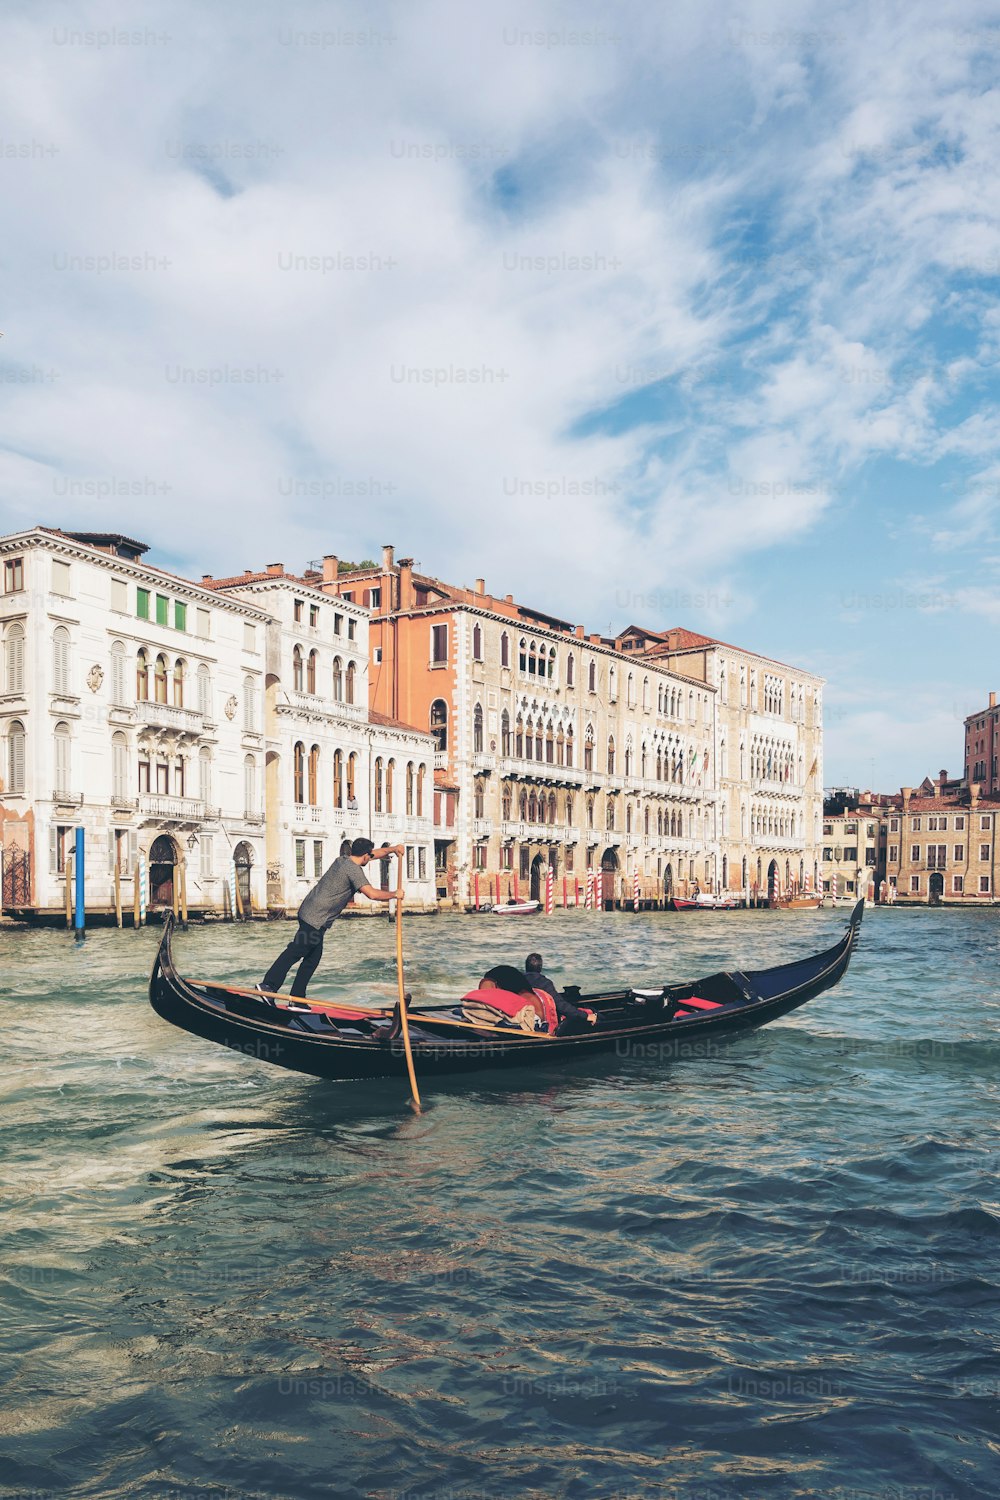 ヴェネツィアのゴンドラをパントするヴェネツィアのゴンドラ、イタリア。ゴンドラは、伝統的な平底のベネチアの手漕ぎボートです。イタリアのヴェネツィアのユニークな交通手段です。